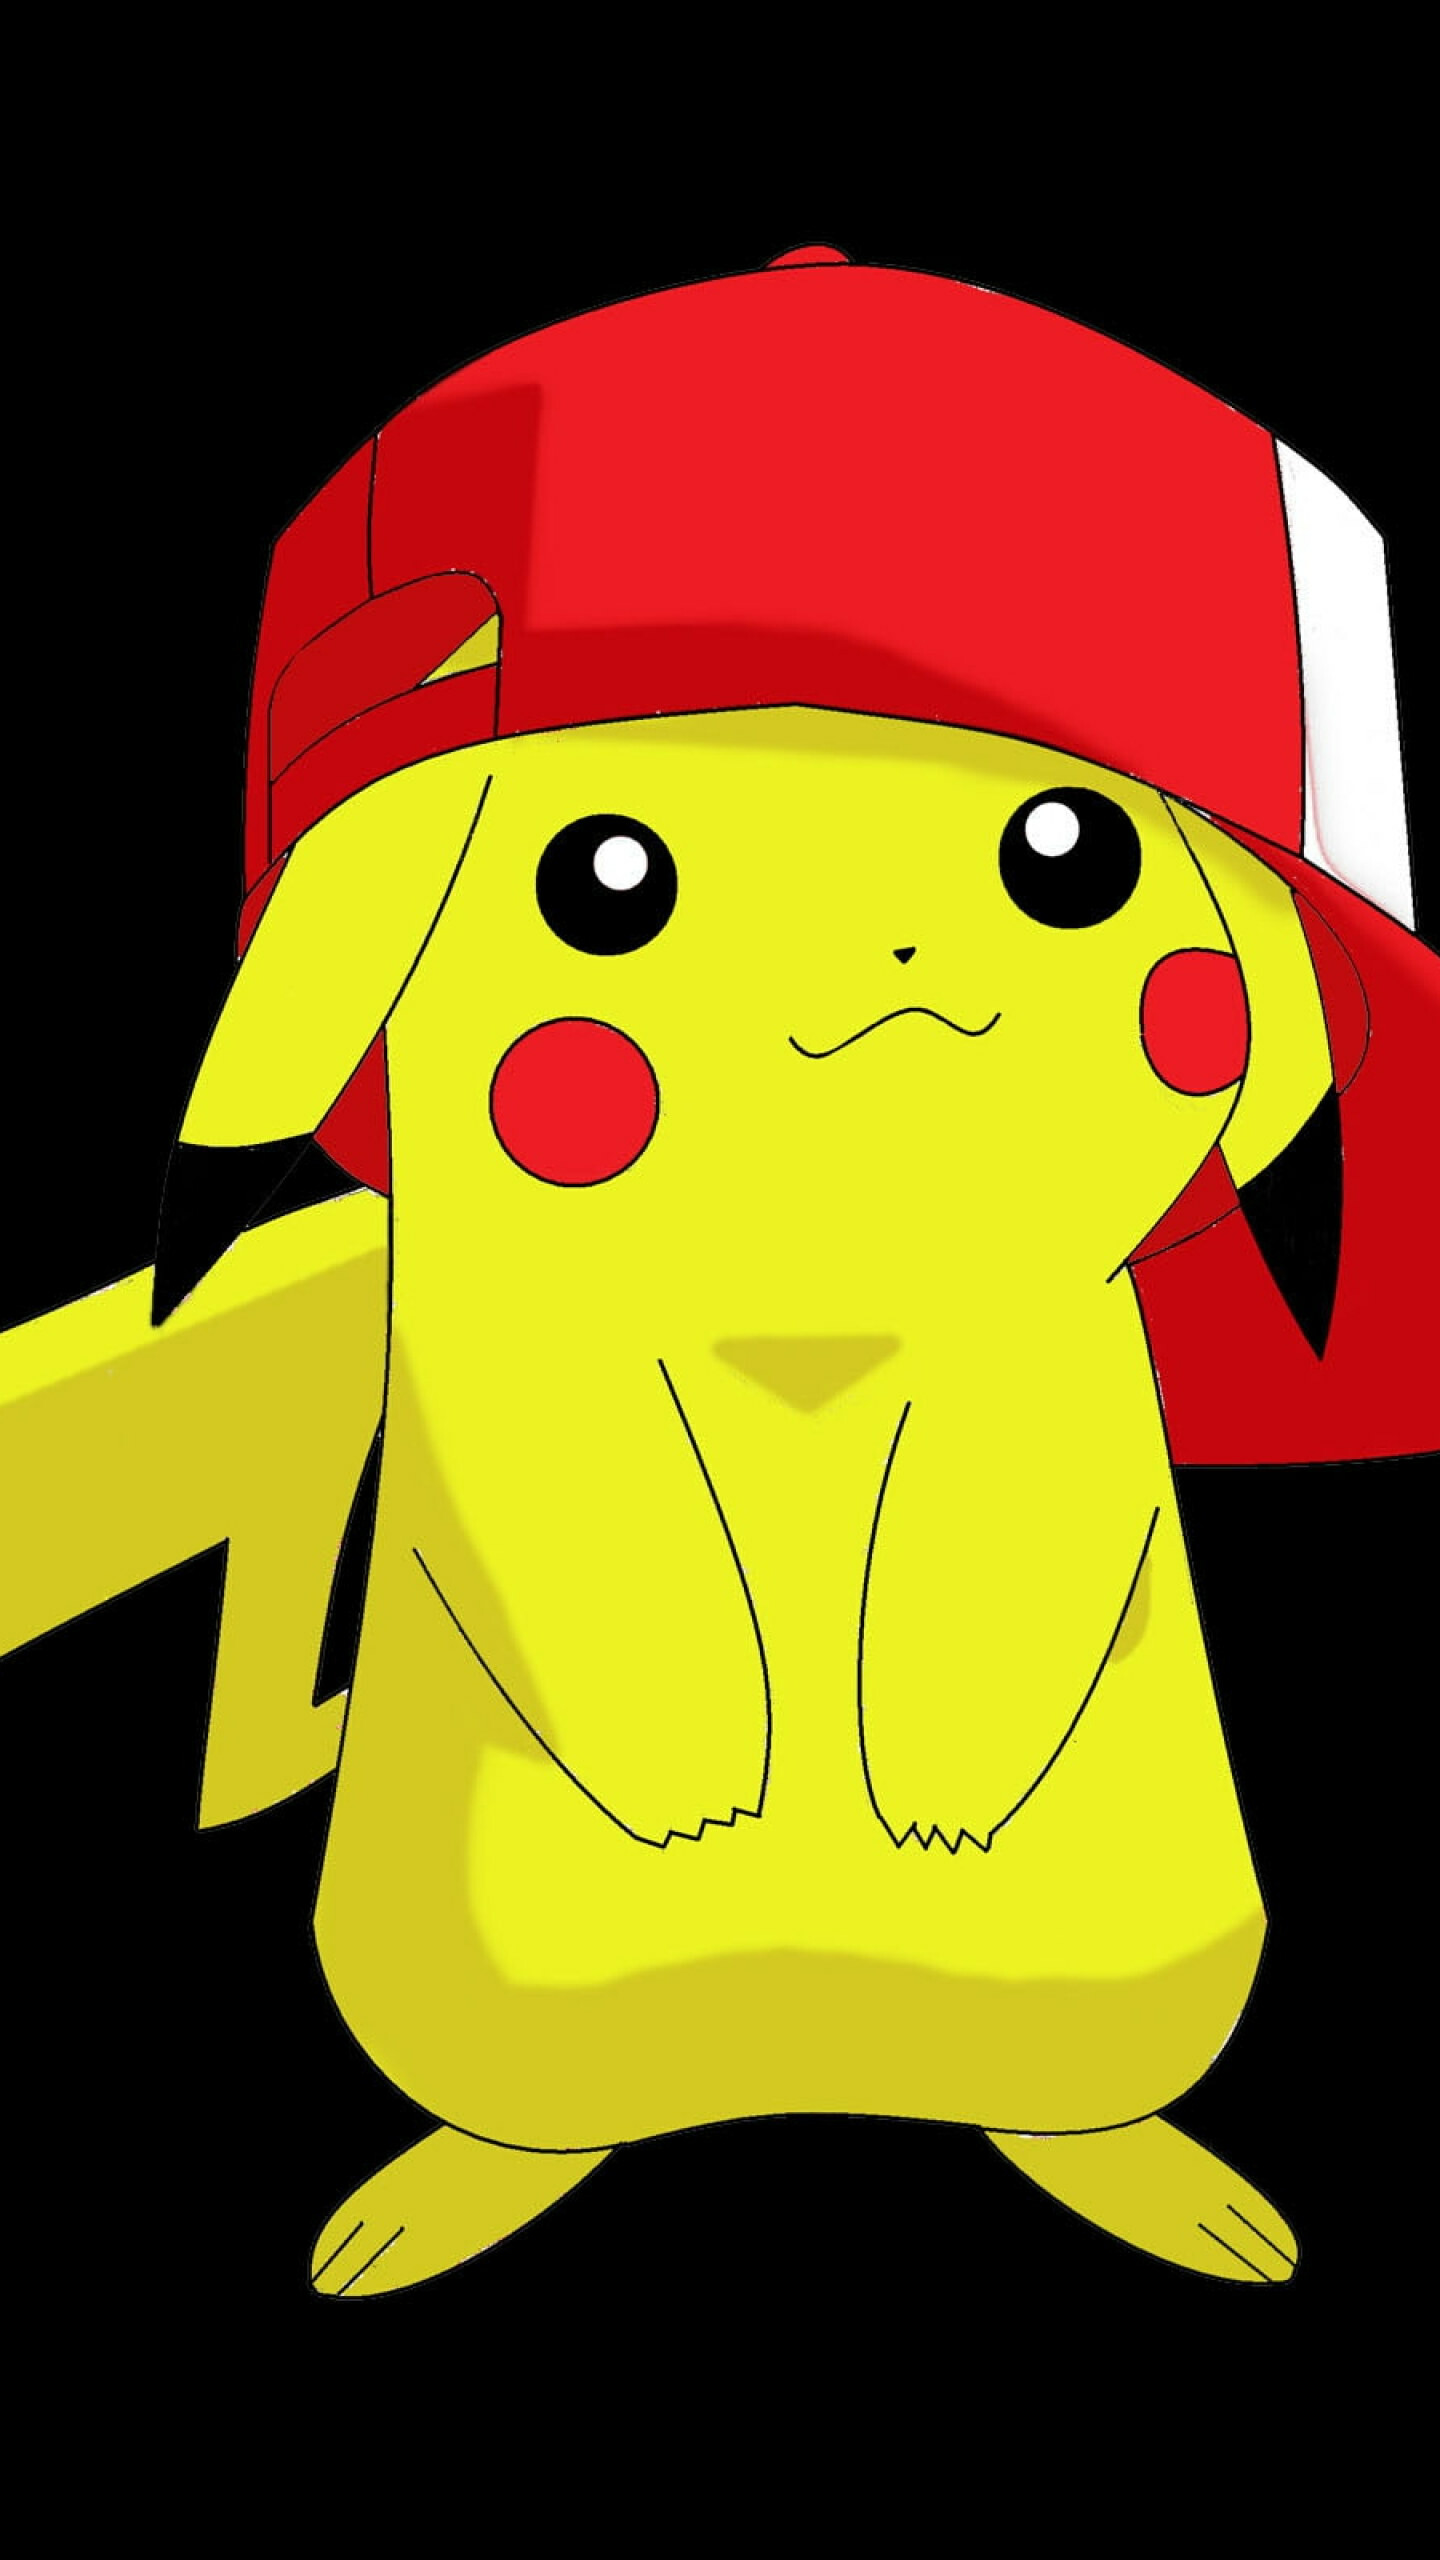 Ash and Pikachu no longer stars of Pokémon anime | wzzm13.com-demhanvico.com.vn